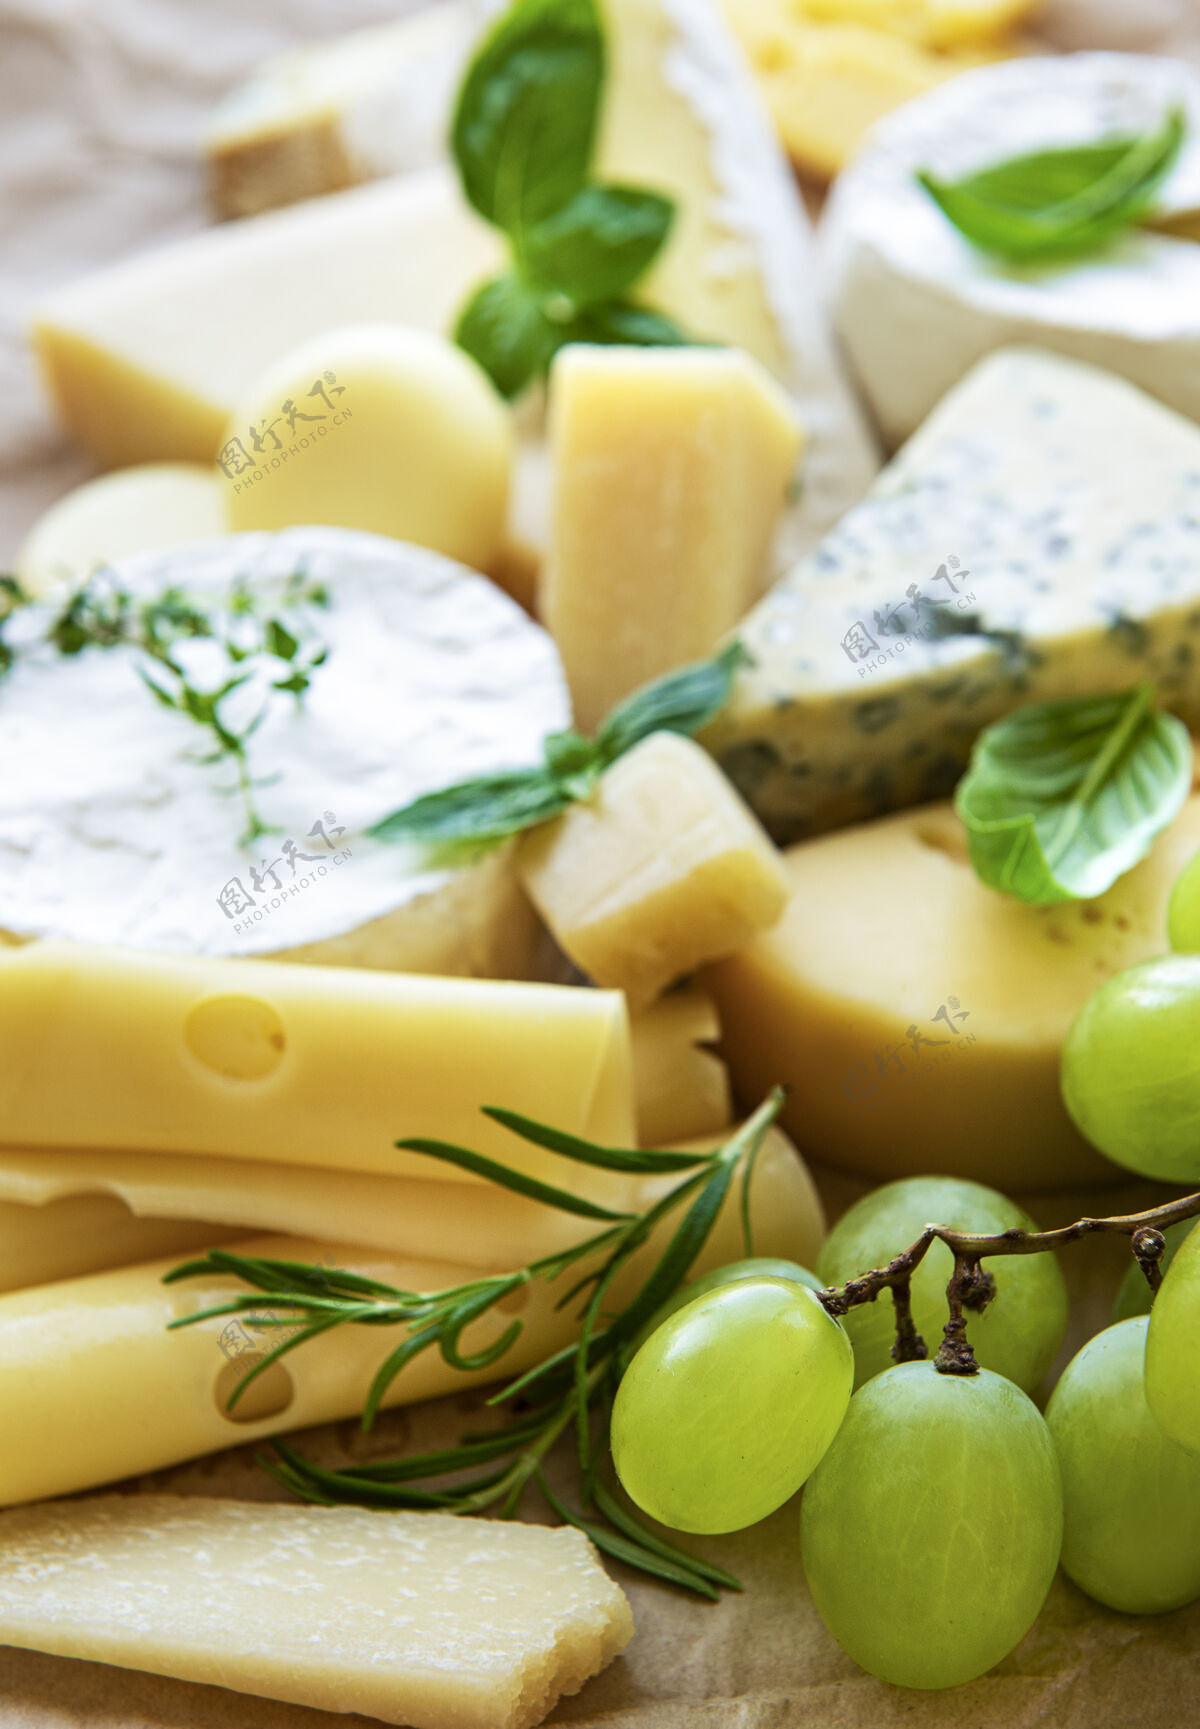 美食桌上摆着各种奶酪 罗勒和葡萄乳制品蓝奶酪不同